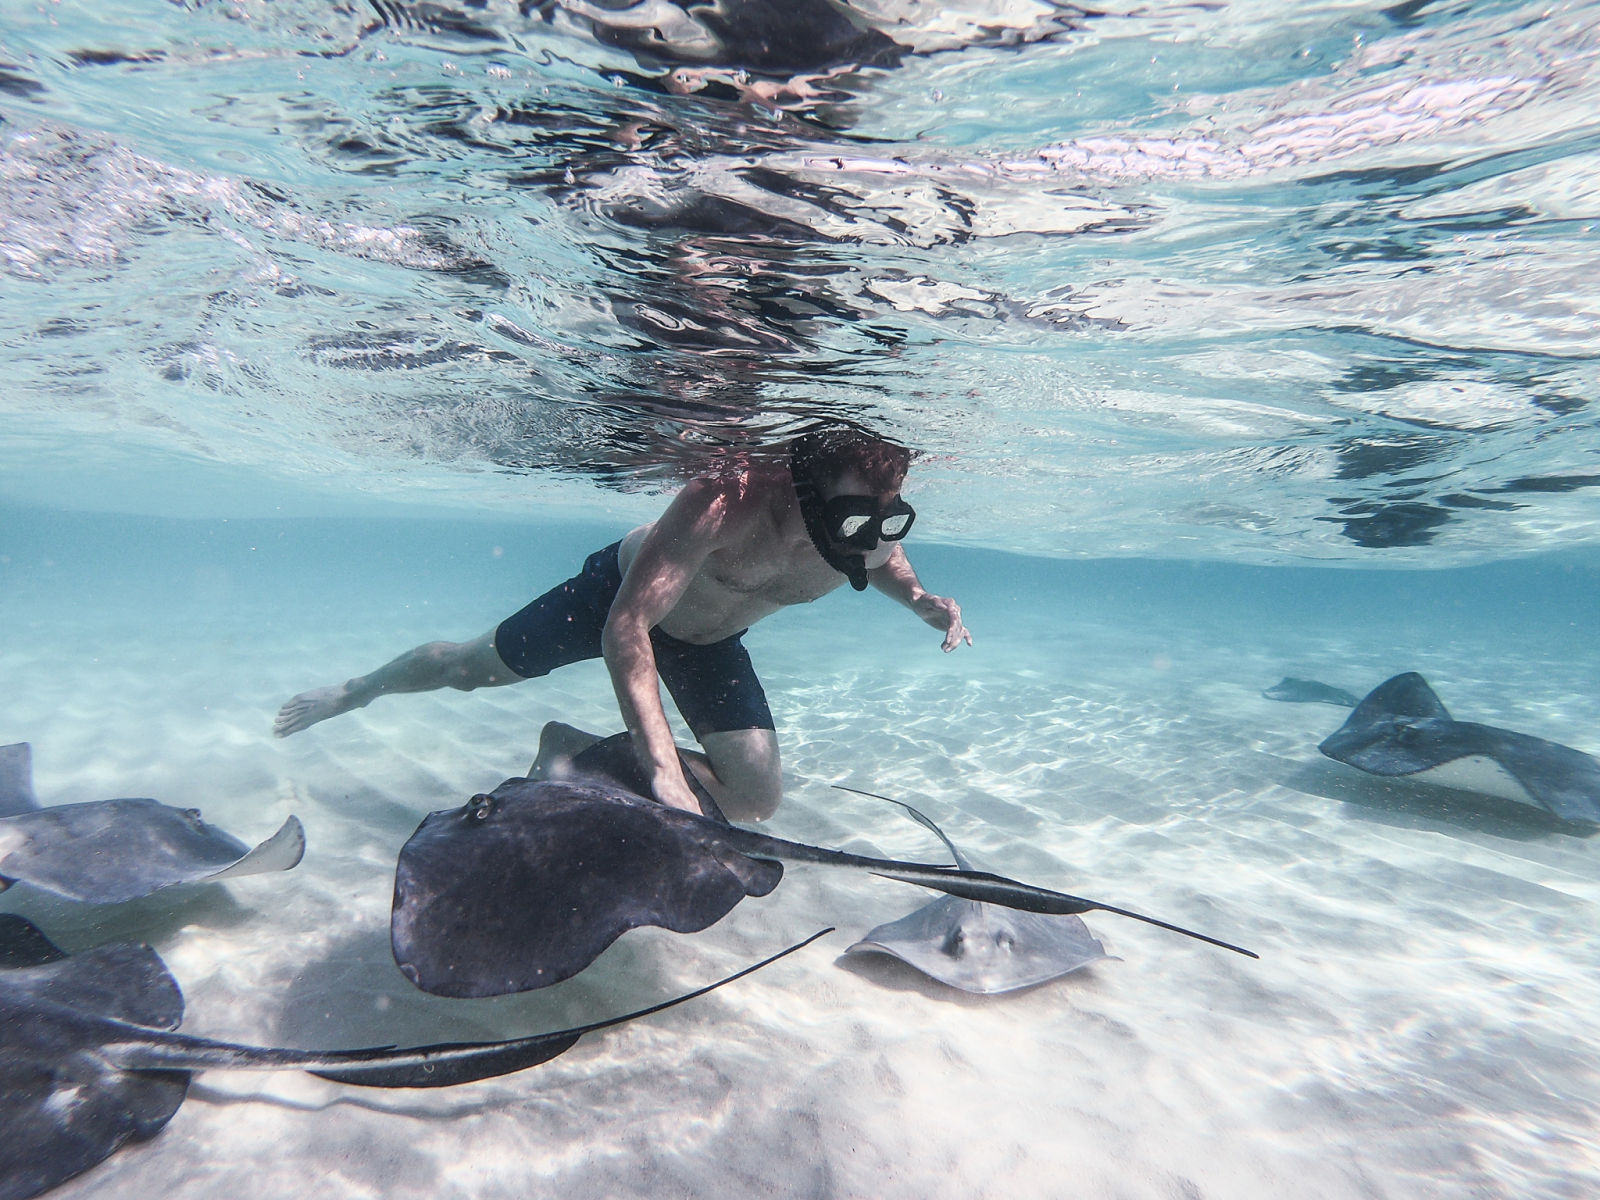 Snorkeling with stingrays